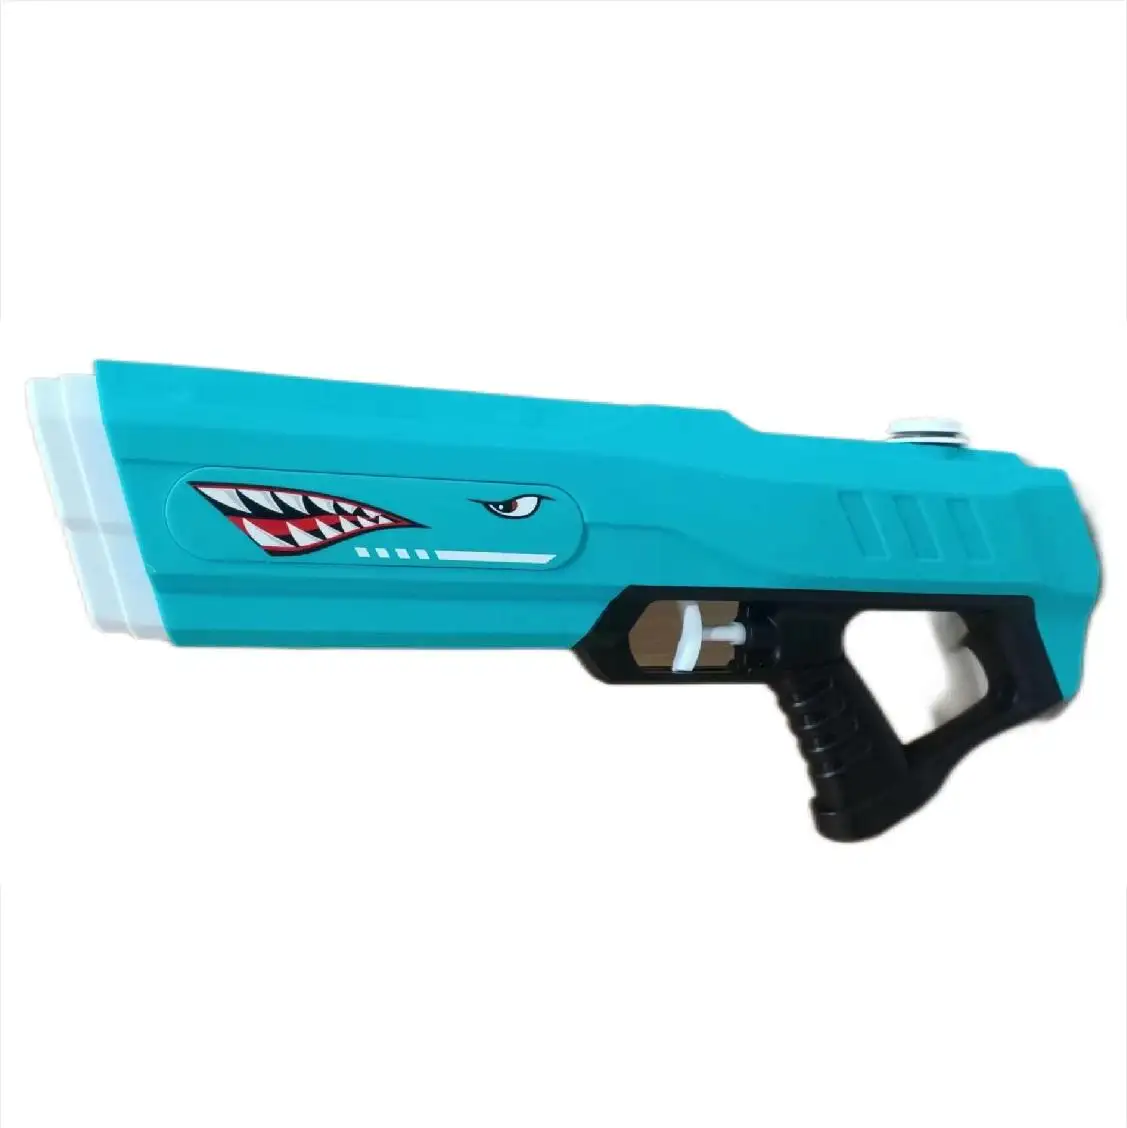 Al Aire Libre 43CM 16,9 PULGADAS Pistola de agua Juguetes Serie Juego Verano Playa Plástico Niños Juguetes Pistola de agua a presión de aire